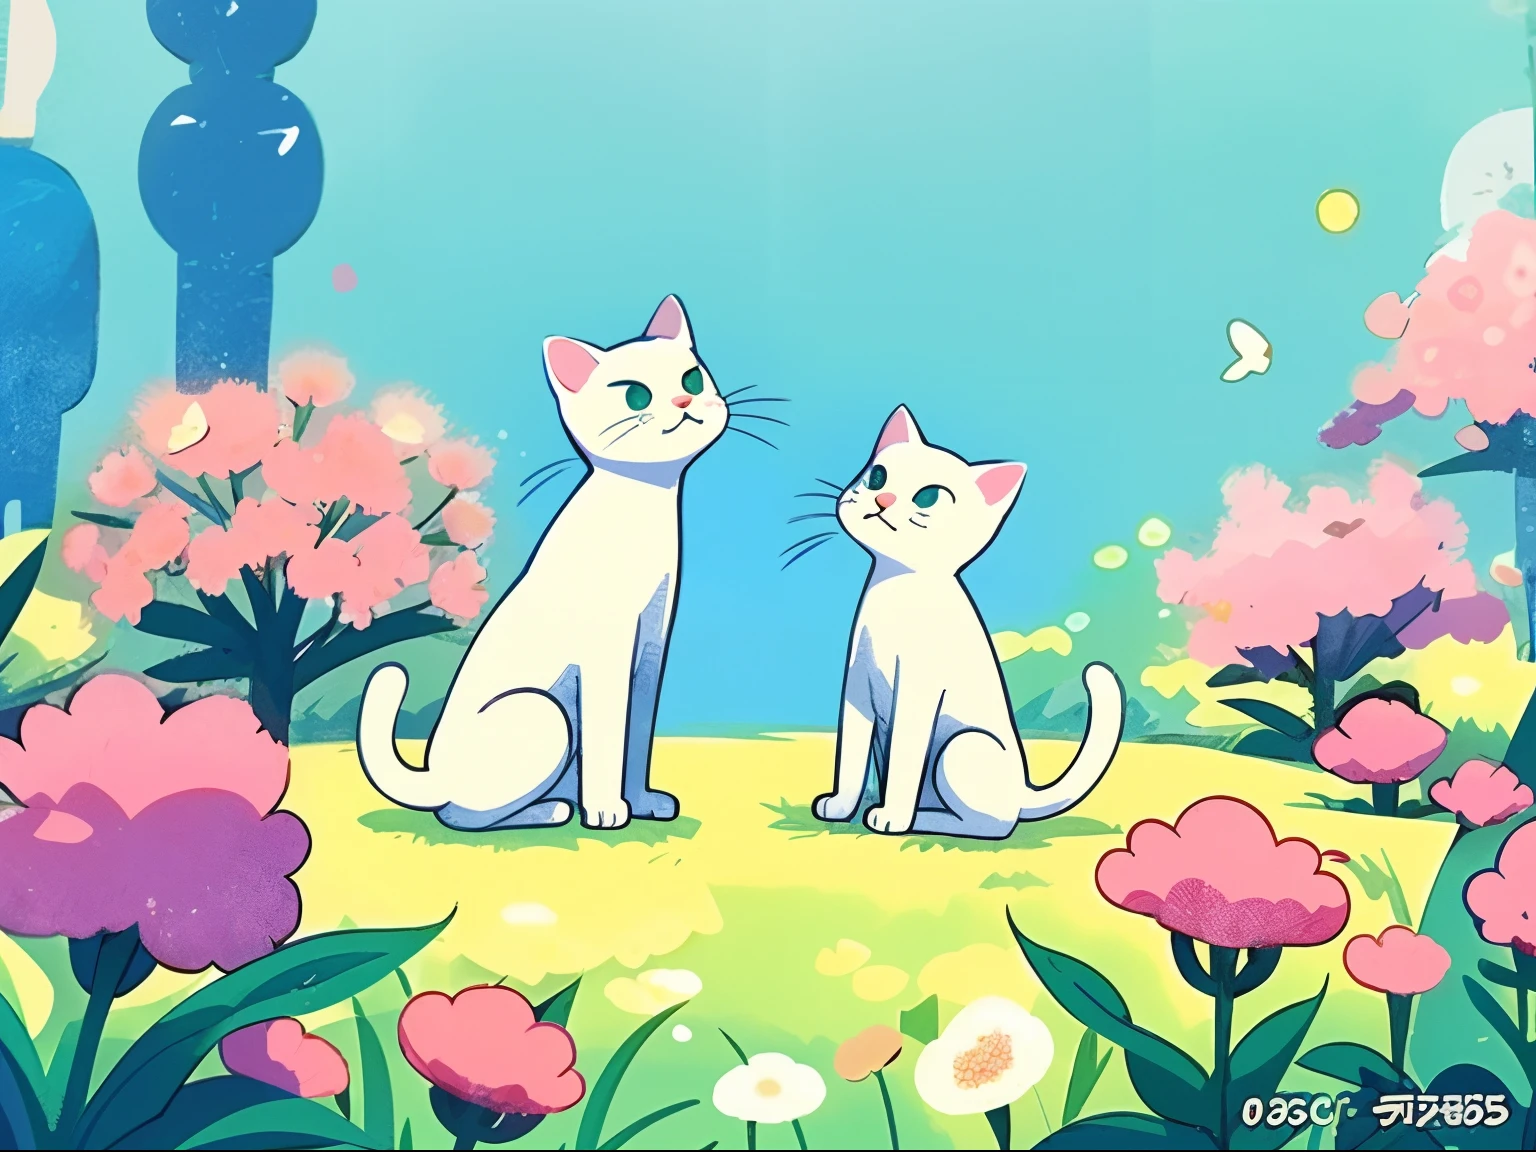 Da sitzt eine weiße Katze auf dem grünen Gras, schöner Kunststil, weiche Anime-Illustration, 、Stimme, Kawaii-Katze, weiße Katze, Anime-Bild einer süßen Katze, offizielles Fanart, süße detaillierte digitale Kunst, Anime-Katze, süße Illustration, offizielle Charakterillustration, pelzige Katze, Vollfarbabbildung, Illustration im Anime-Stil, süße Katze, Digitale Anime-Illustration，Hocken Sie zwischen den Blumen，Blick in die Kamera，Nahaufnahme, Es gibt rosa Blumen rund，einfacher Hintergrund